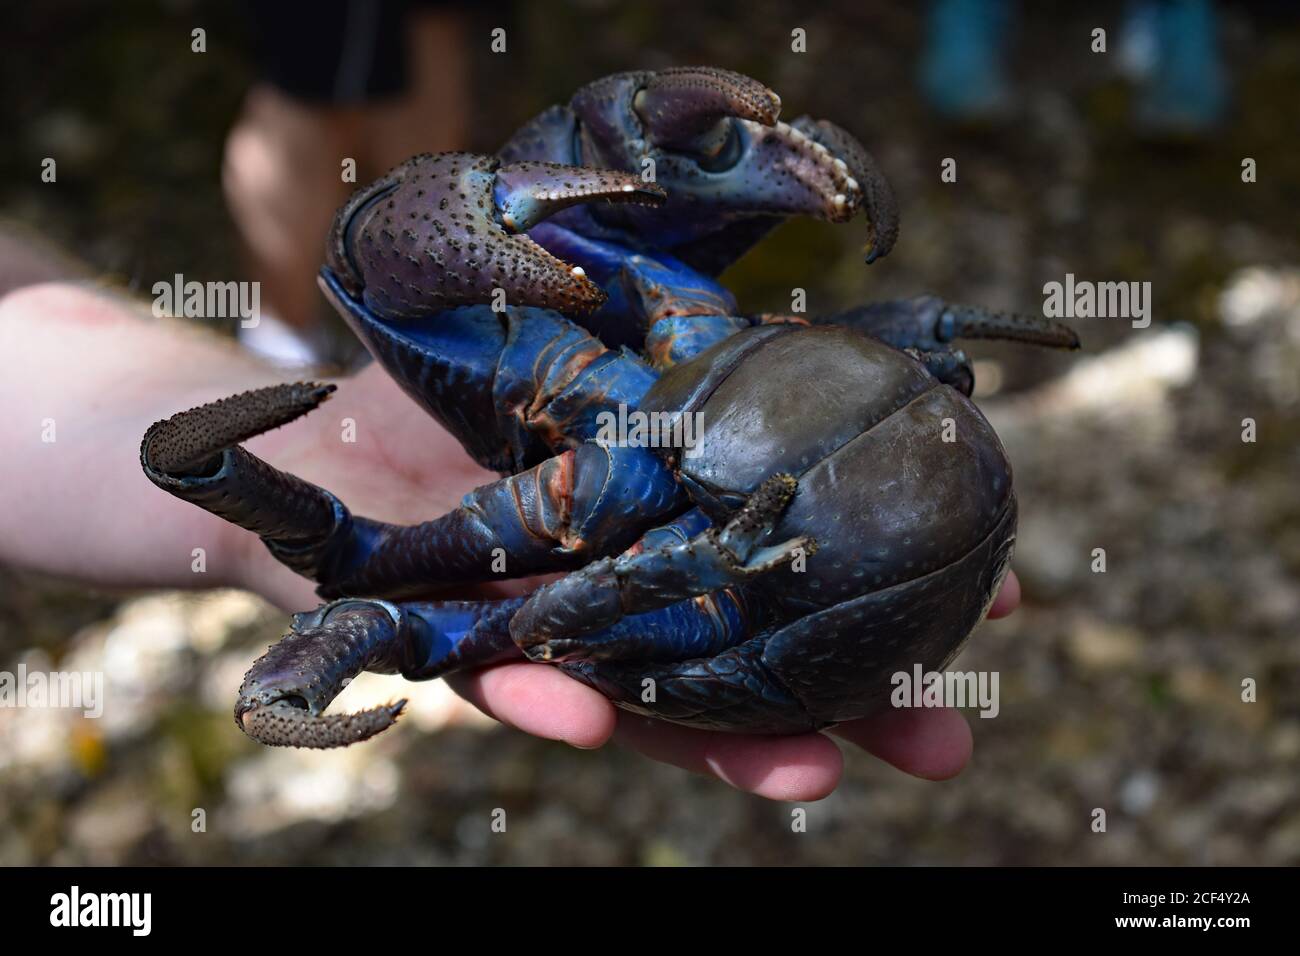 Un crabe de noix de coco (Birgus latro) est détenu. Le dessous du crabe est bleu vif et orange et ses griffes sont visibles. Le bras est intentionnellement flou. Banque D'Images